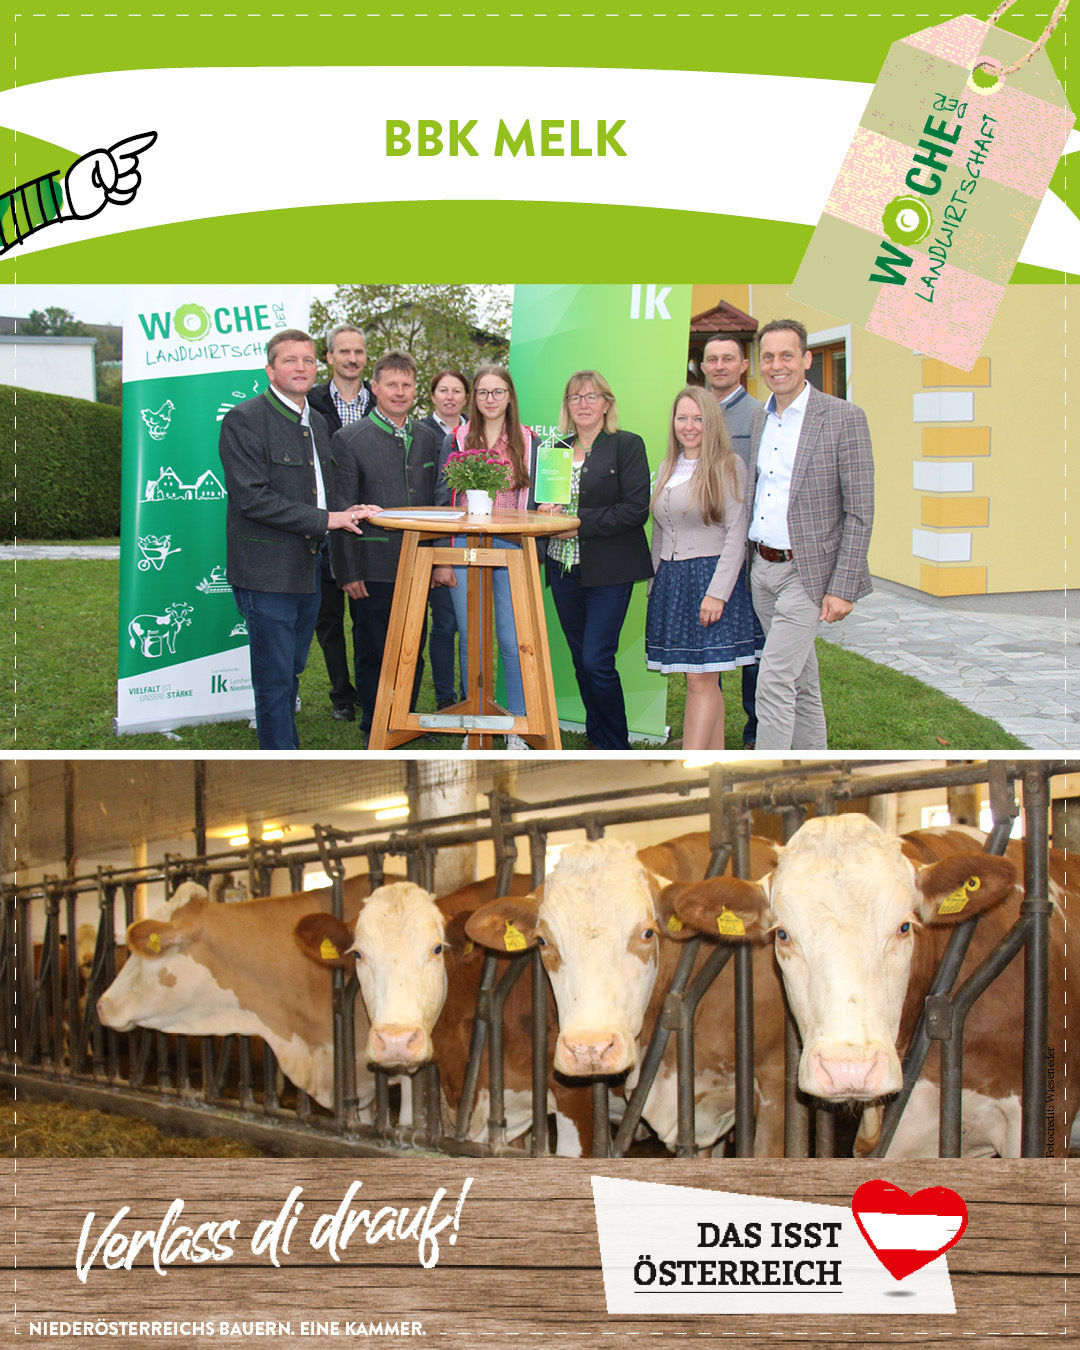 Das war die Woche der Landwirtschaft 2021 in Niederösterreich.